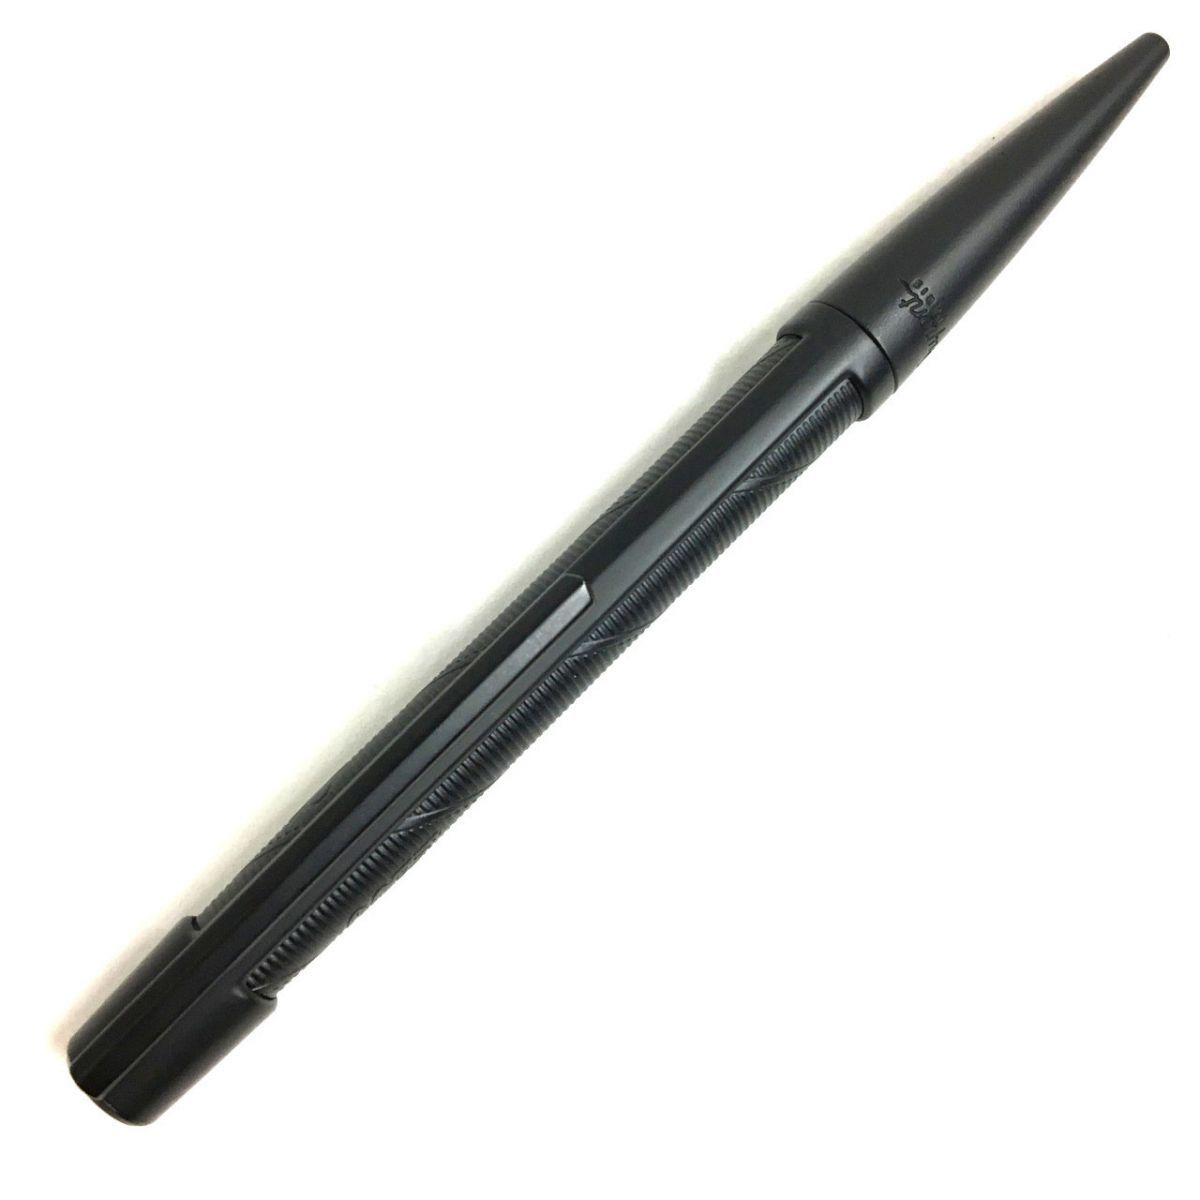  превосходный товар VS.T.Dupontes*te-* Dupont Defi 007 доступ коллекция кручение тип шариковая ручка черный . производства кисть регистрация проверка * с футляром 